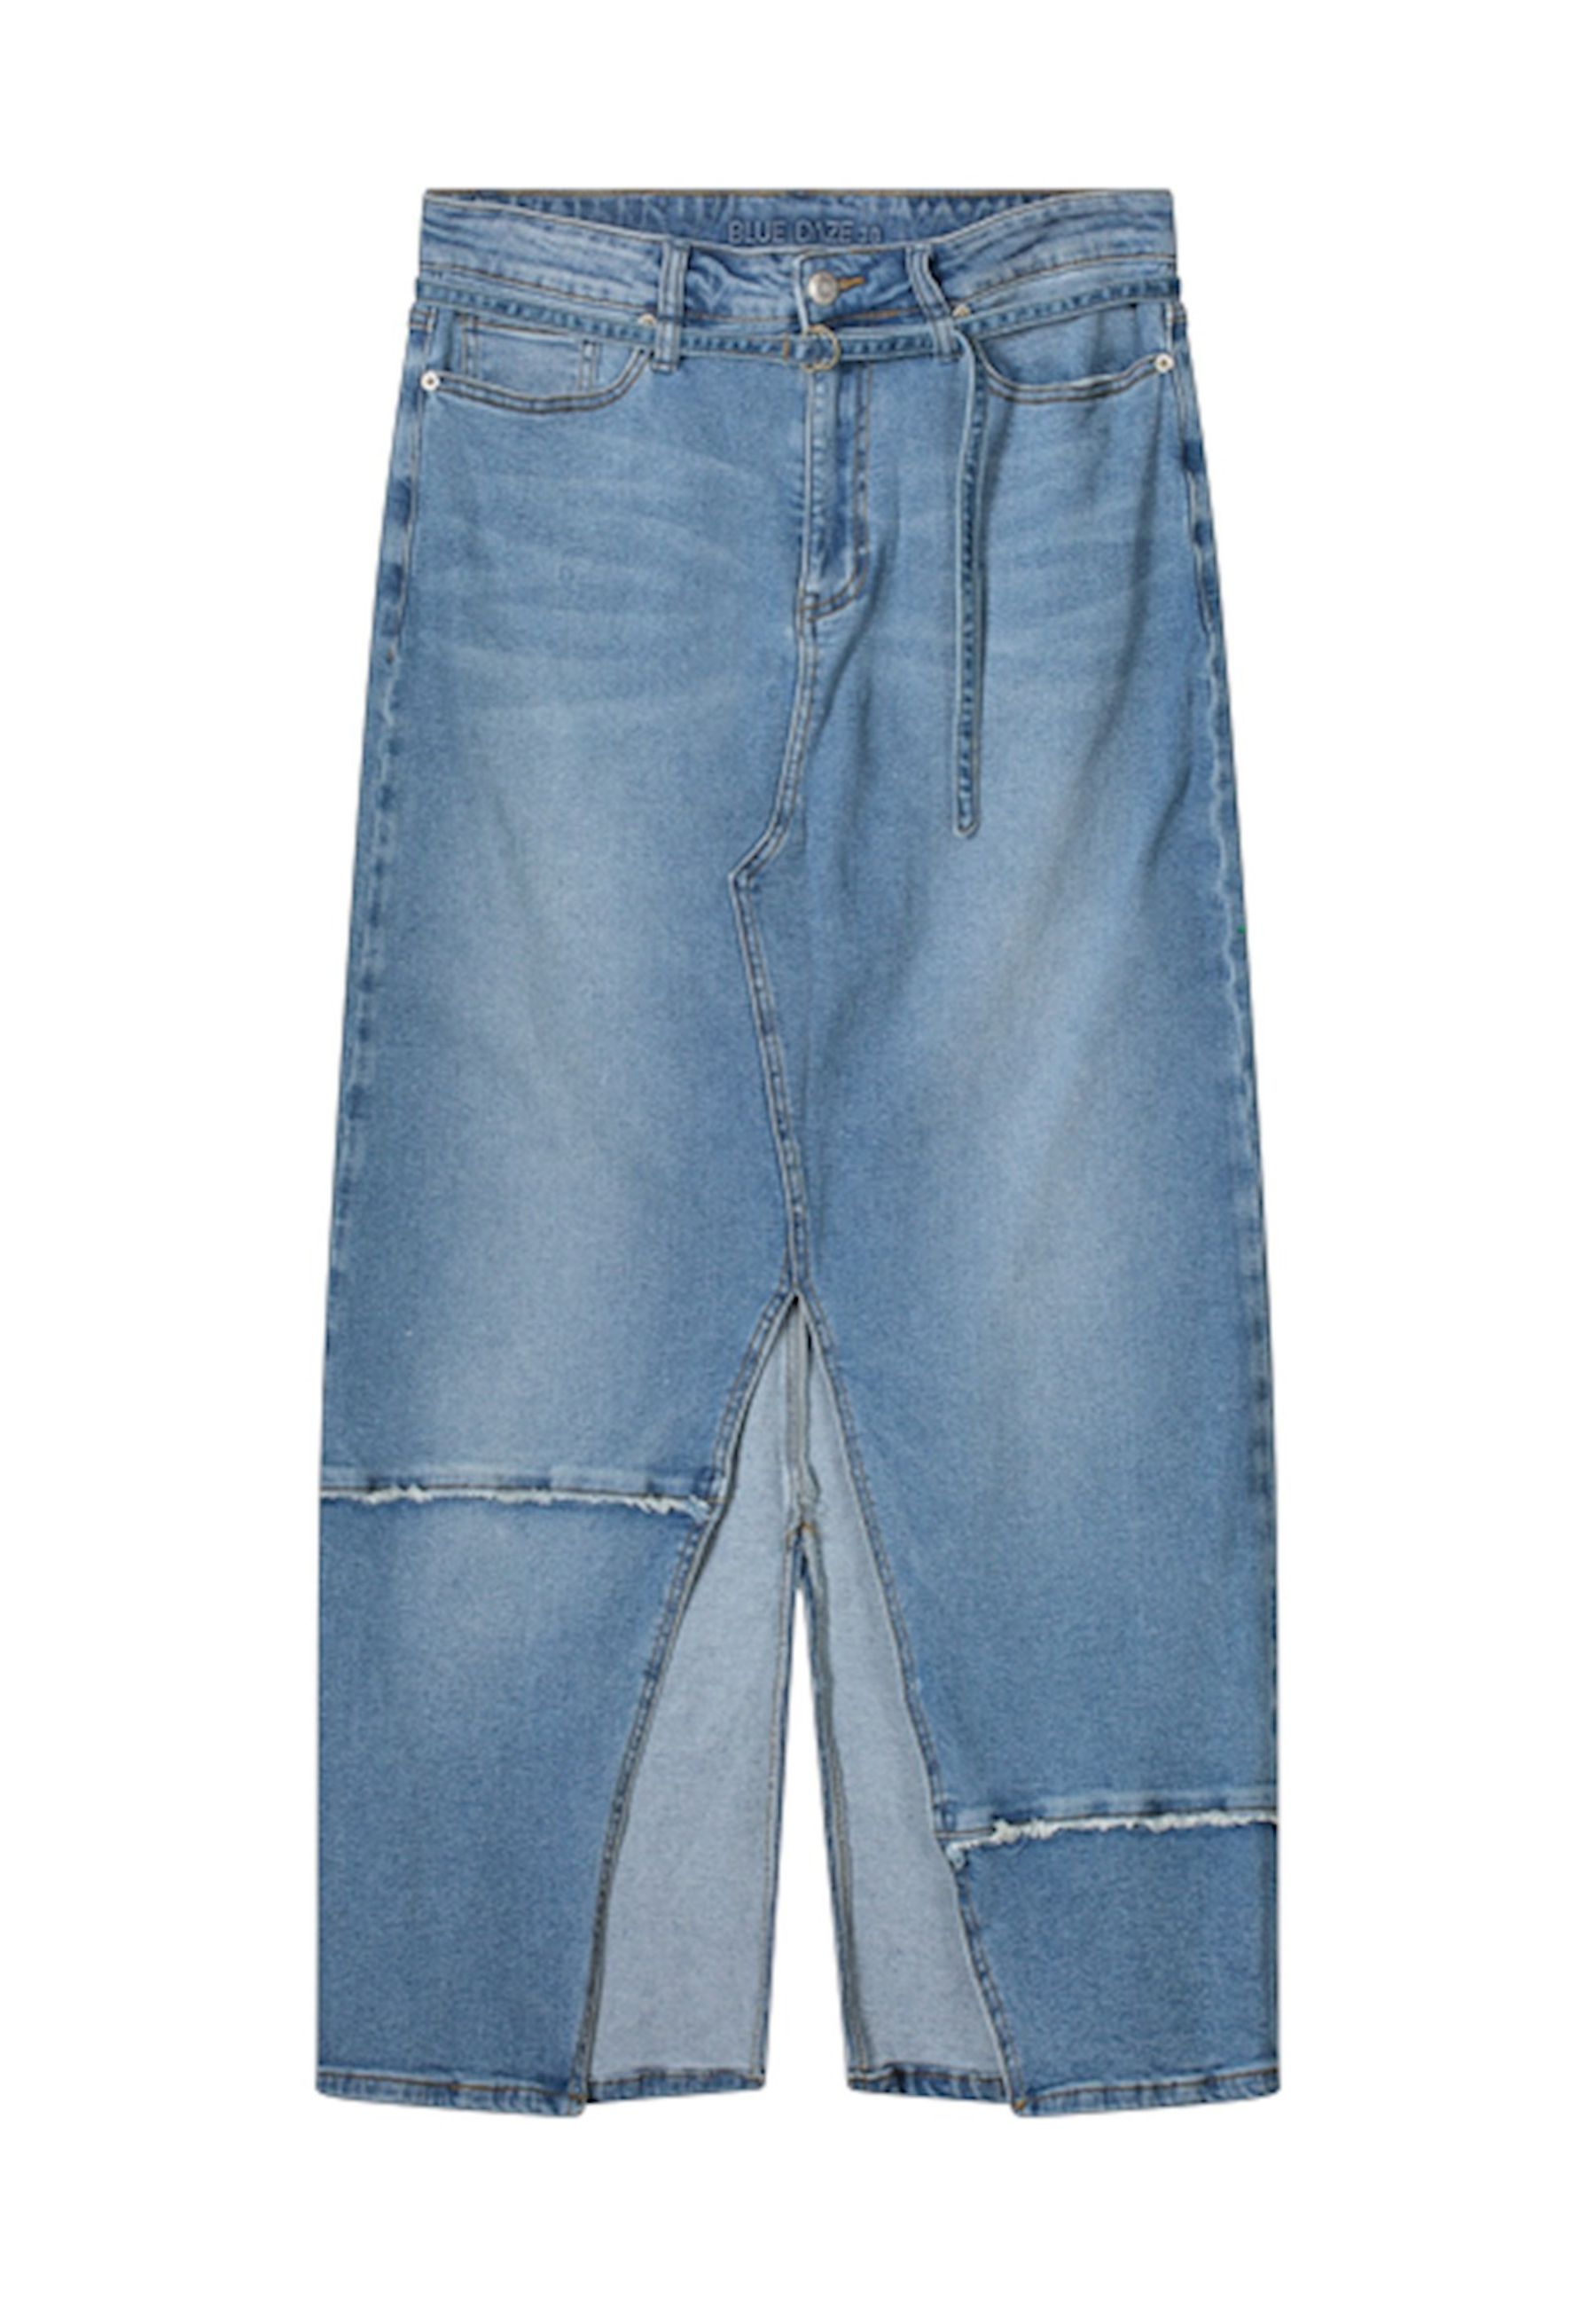 Summum Rok Jeans maat 36 rokken jeans